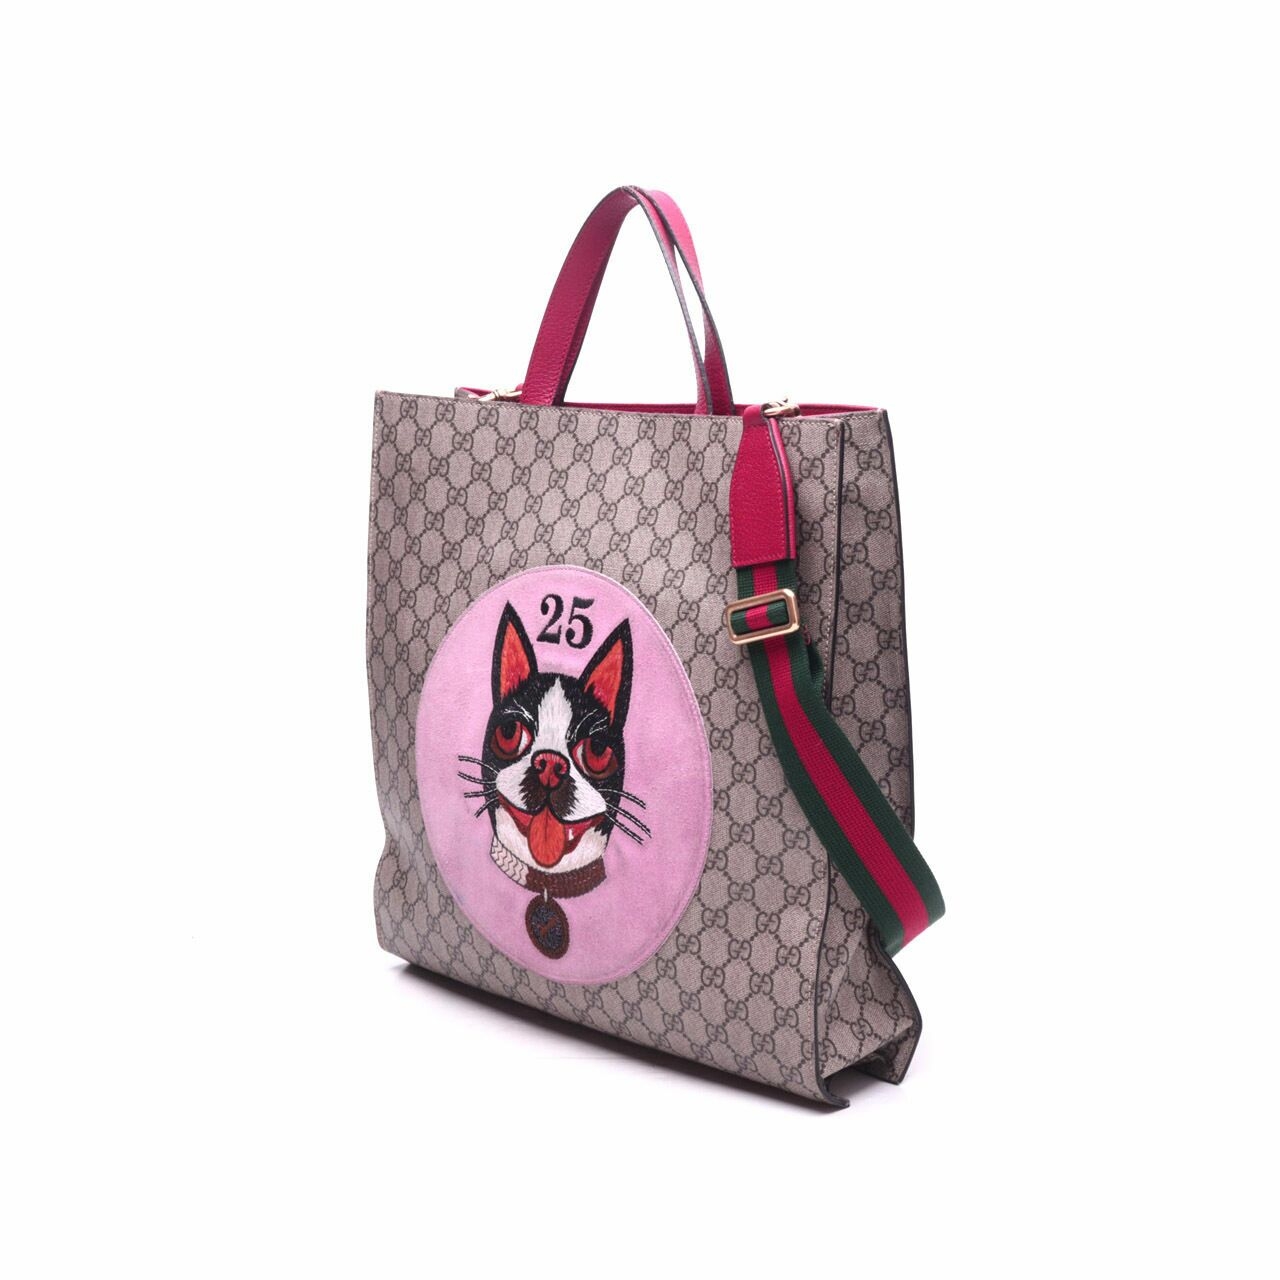 Gucci GG Supreme Bosco Brown/Beige/Pink Tote Bag